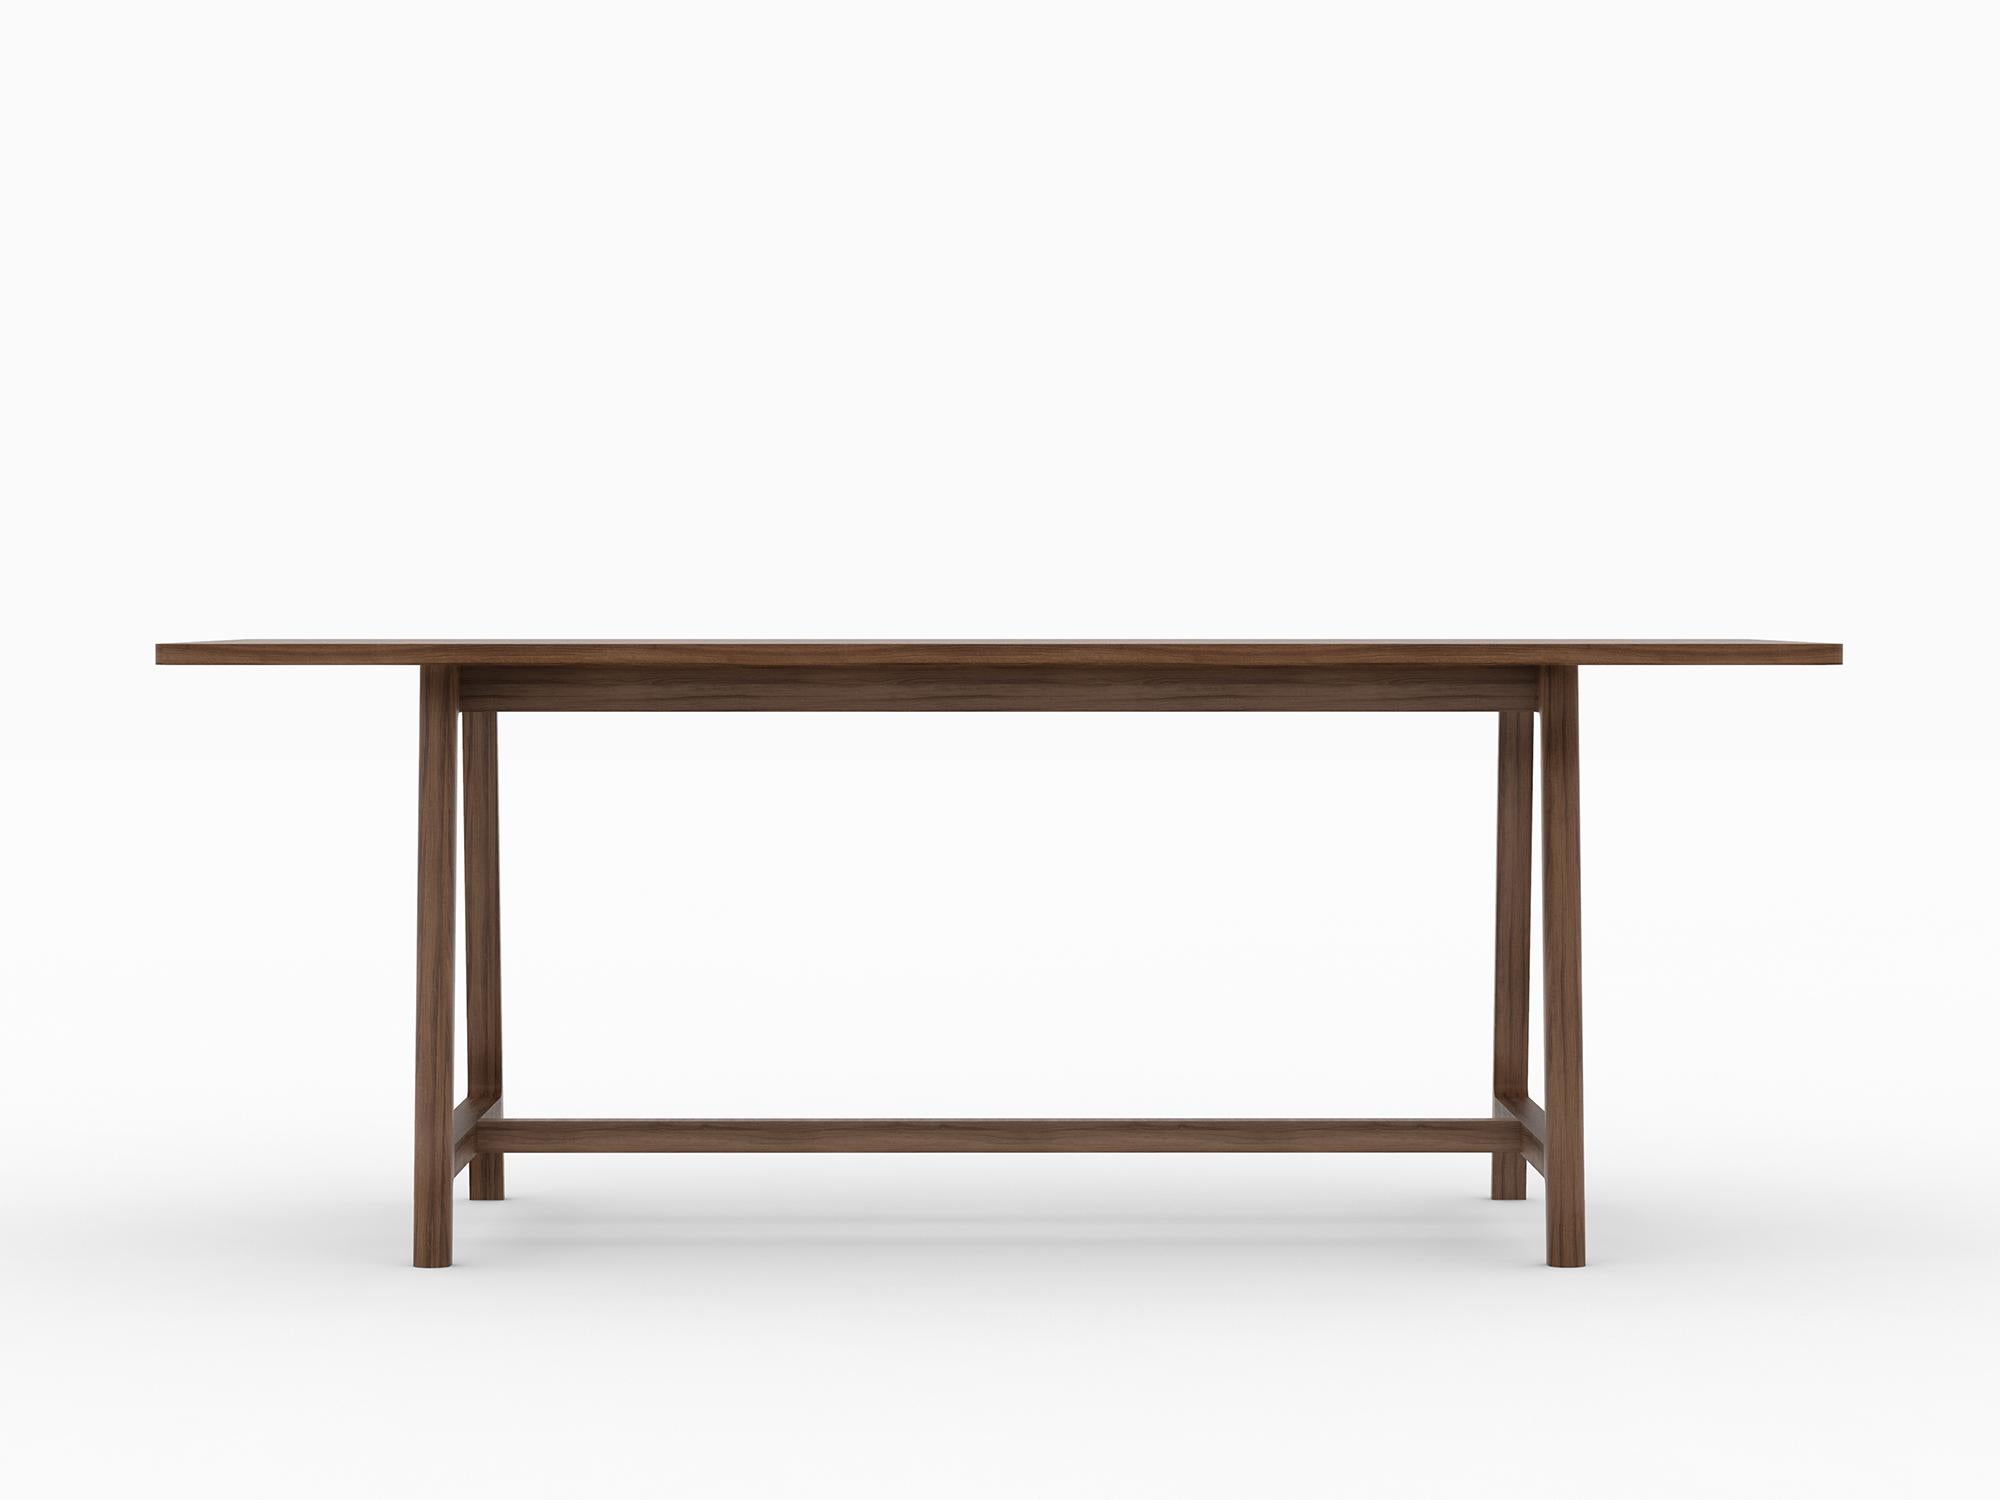 Die Frame Collection ist das perfekte Trio für jeden Ort der Zusammenkunft. Die Kollektion besteht aus einem Tisch, einem Stuhl und einer Bank und enthält alles, was man für ein gemütliches Beisammensein braucht.

Das schlichte, skulpturale und